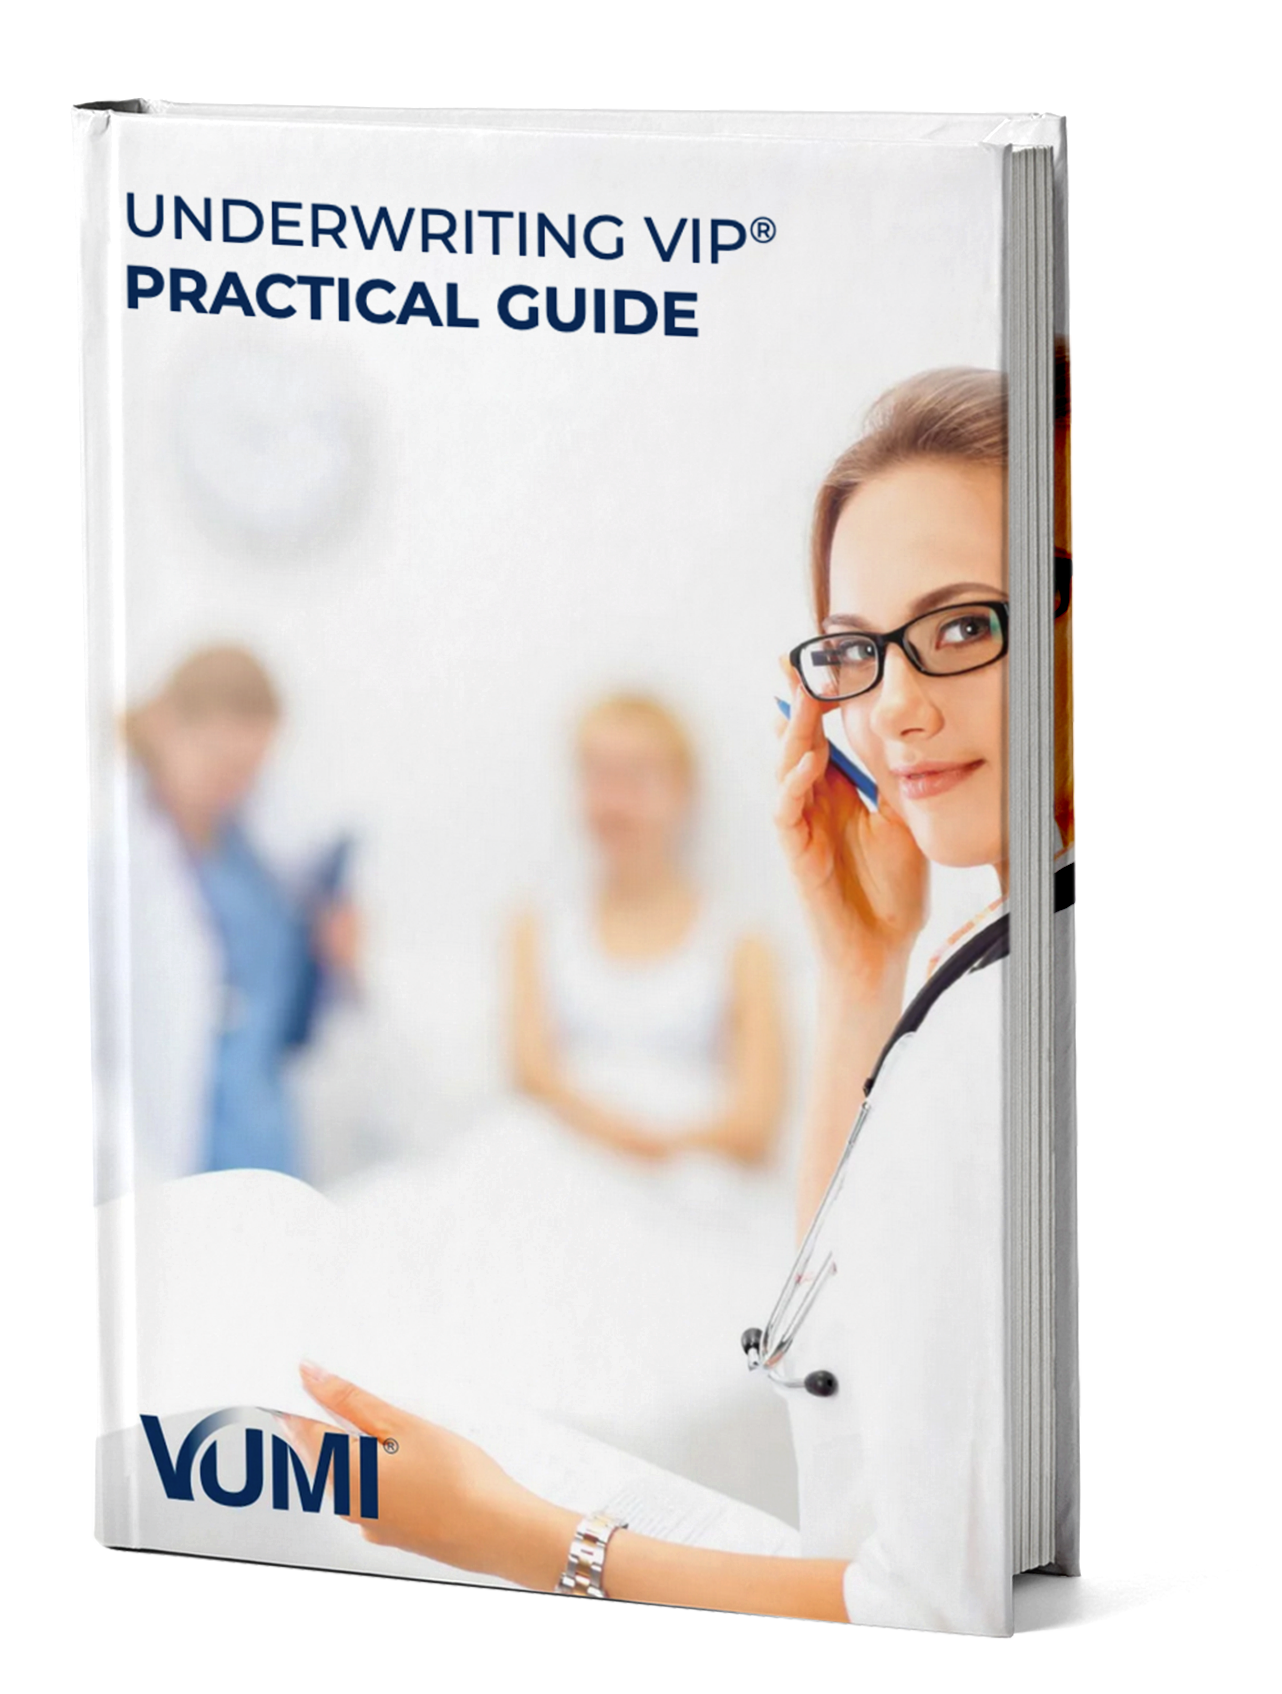 Underwriting vip® practical guide